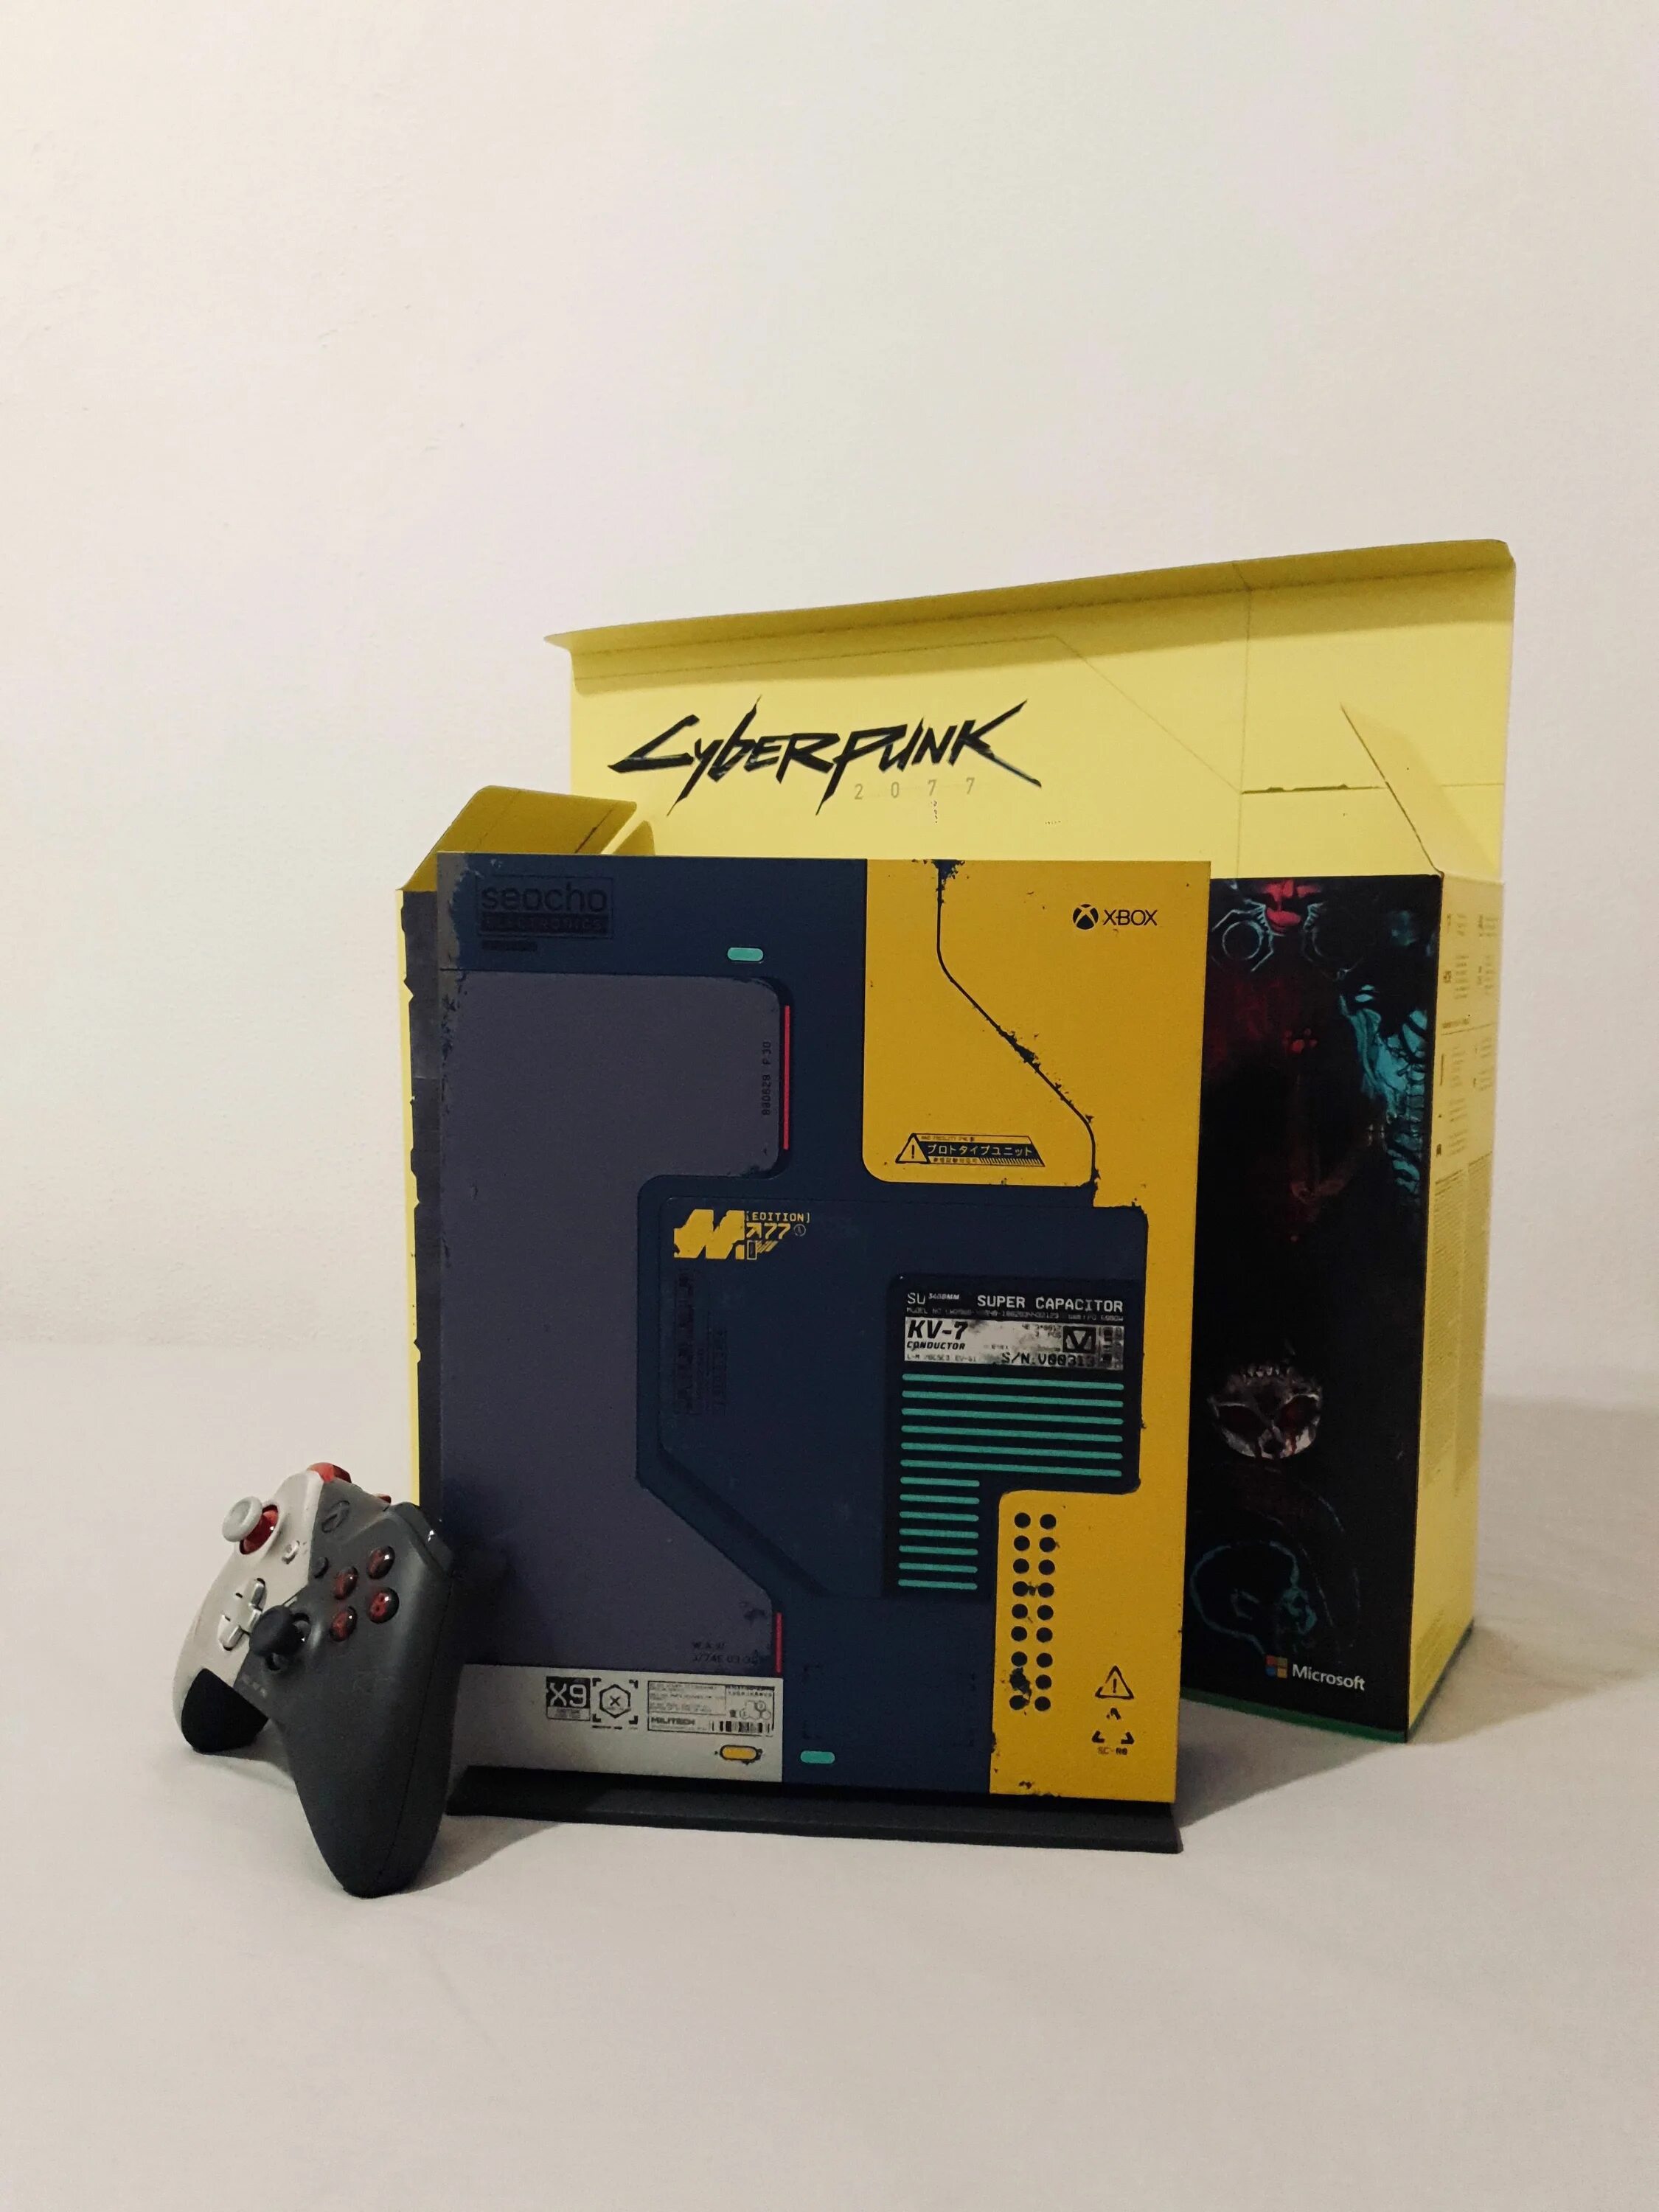 Xbox series x cyberpunk. Xbox one x Cyberpunk 2077. Xbox one x Cyberpunk 2077 Limited. Xbox Cyberpunk 2077 Limited Edition. Xbox one Cyberpunk 2077 Edition.